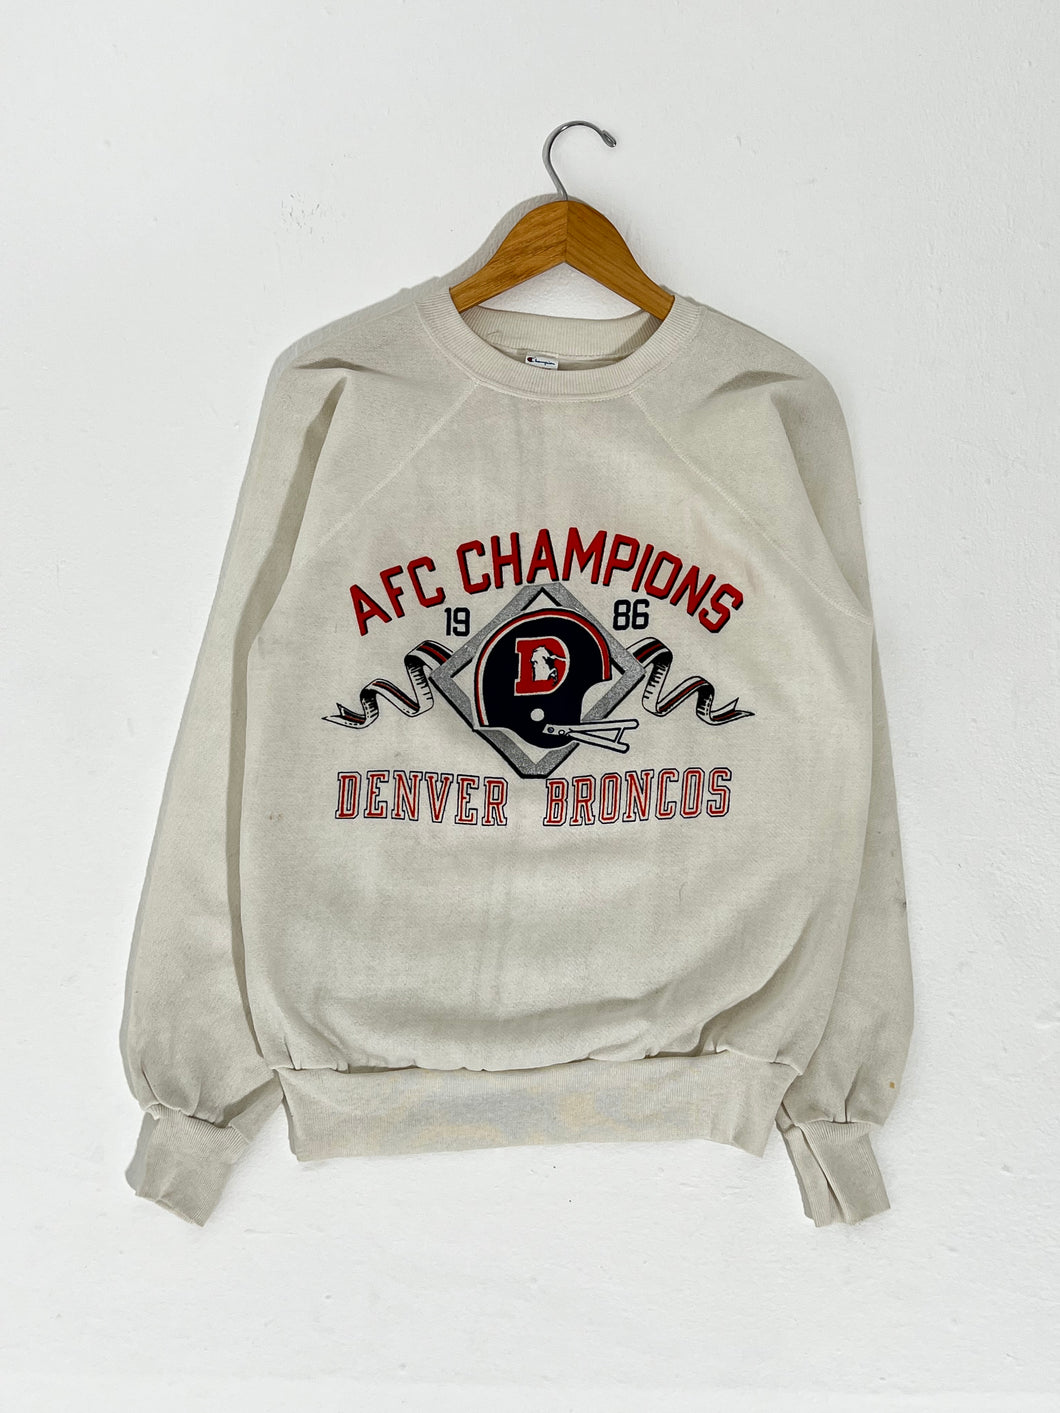 Vintage 1986 AFC Champs Broncos Crewneck Sz. XL